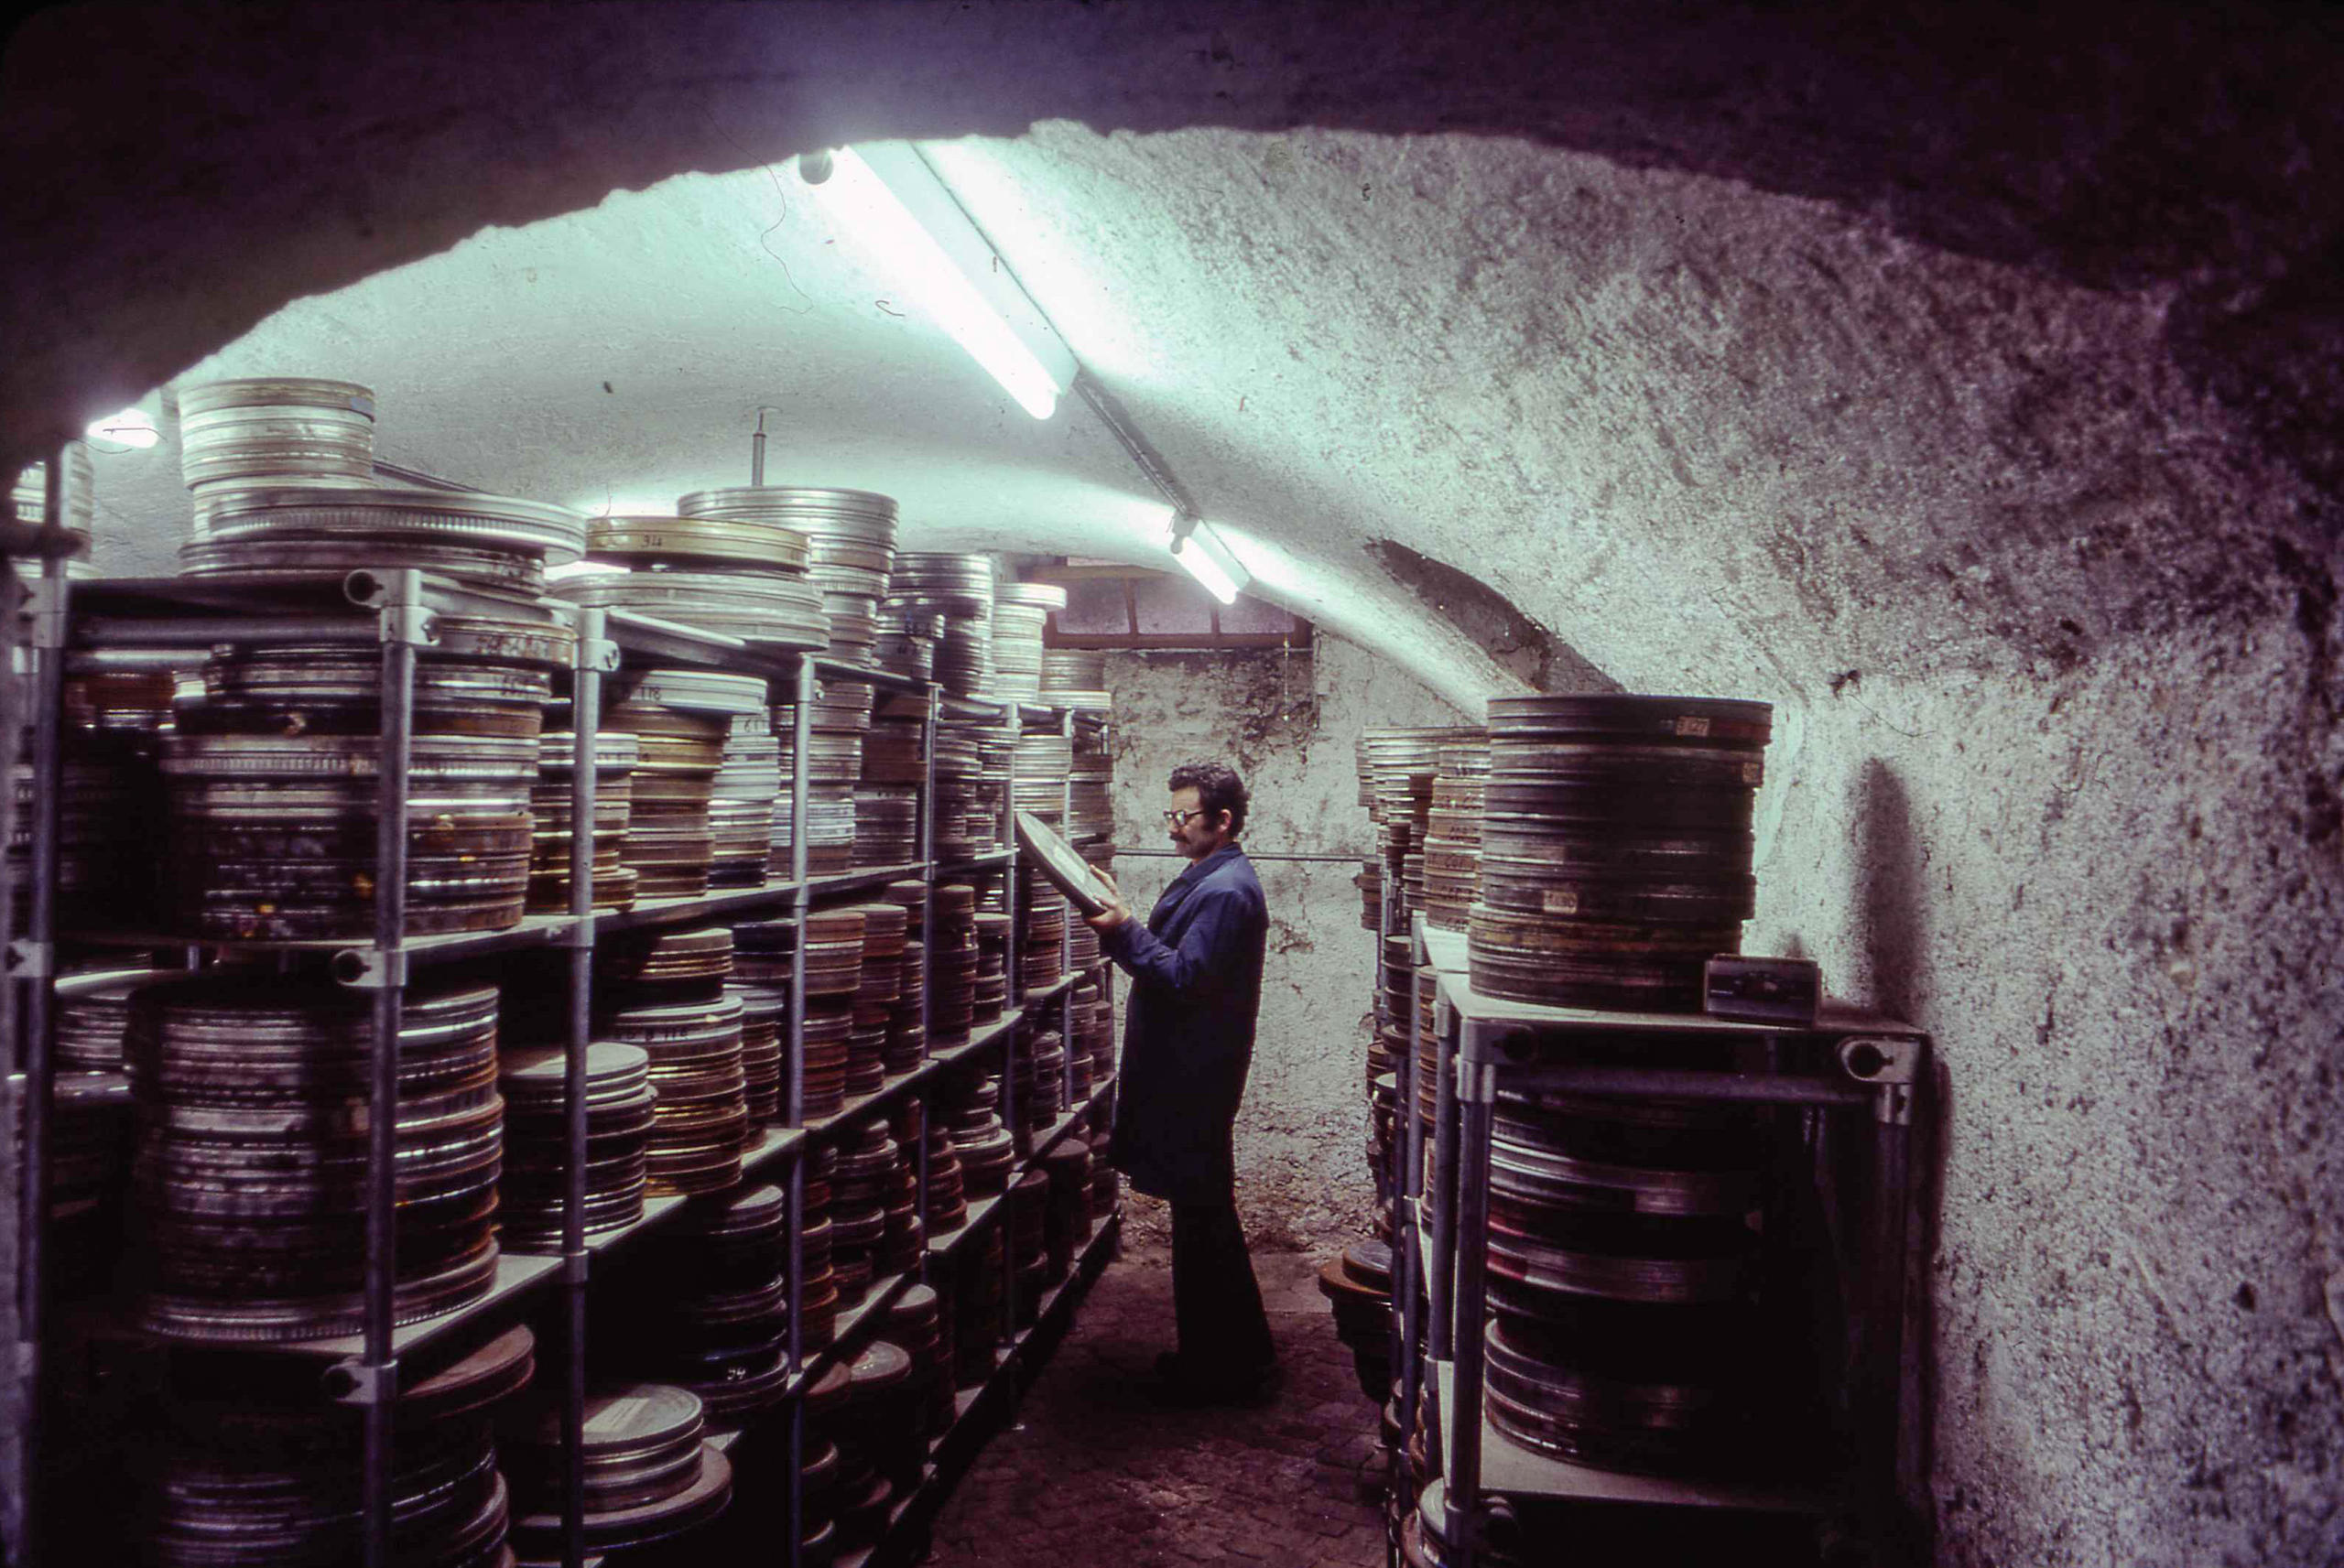 シネマテーク・スイスのフィルム保管庫、1979年